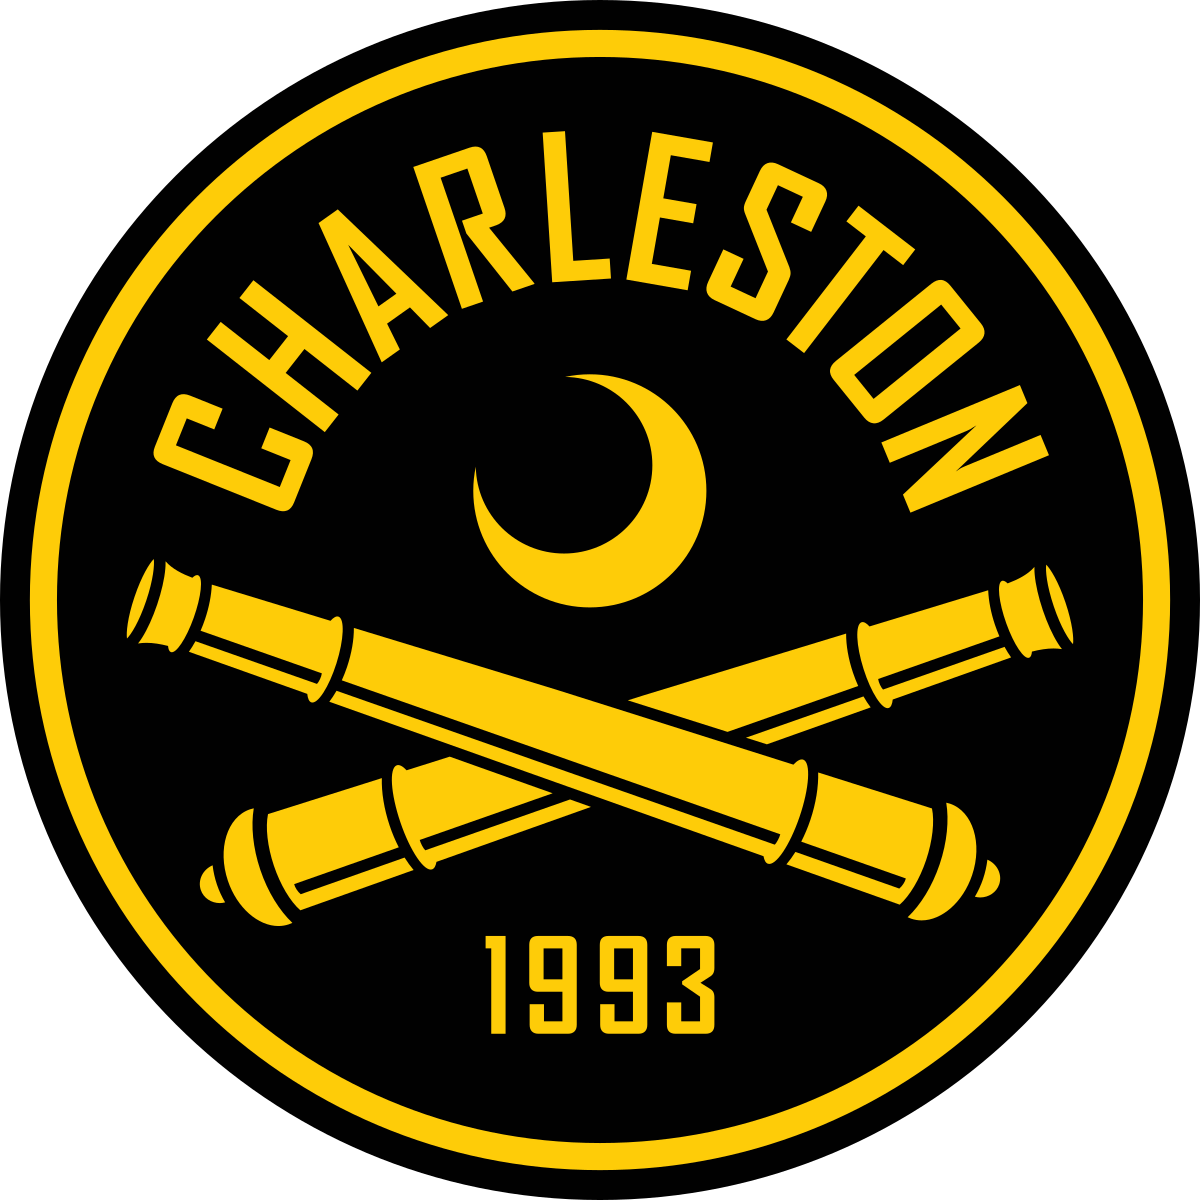 Charleston Place - Wikipedia